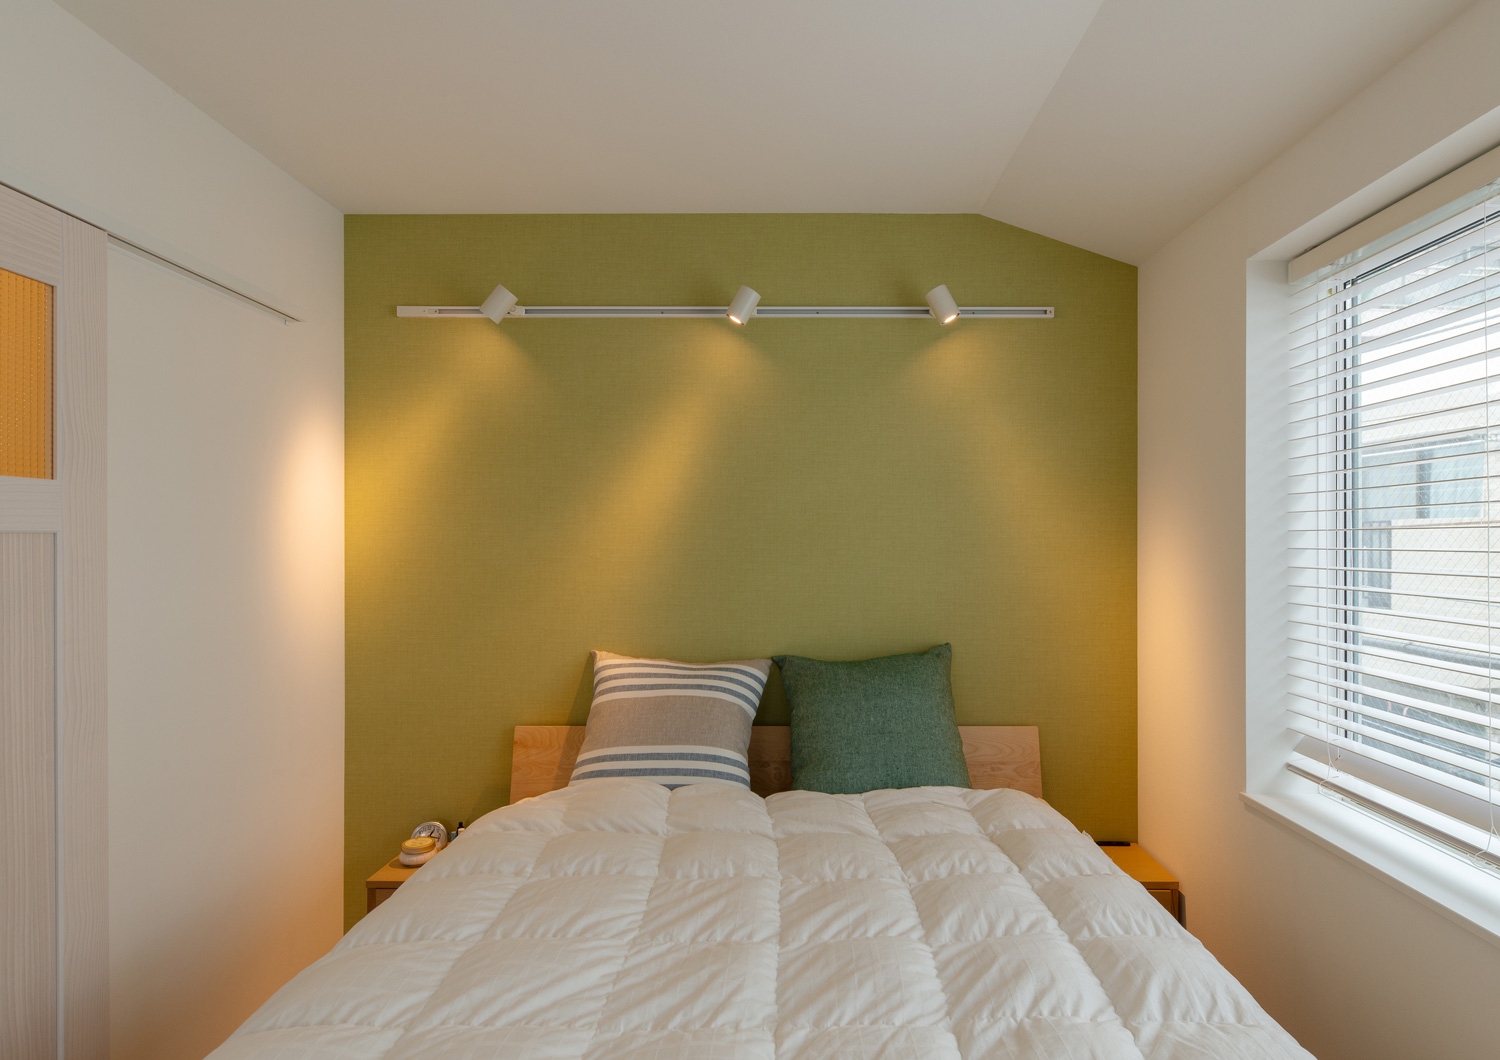 枕やアクセントクロスに緑を採用した寝室・デザイン住宅